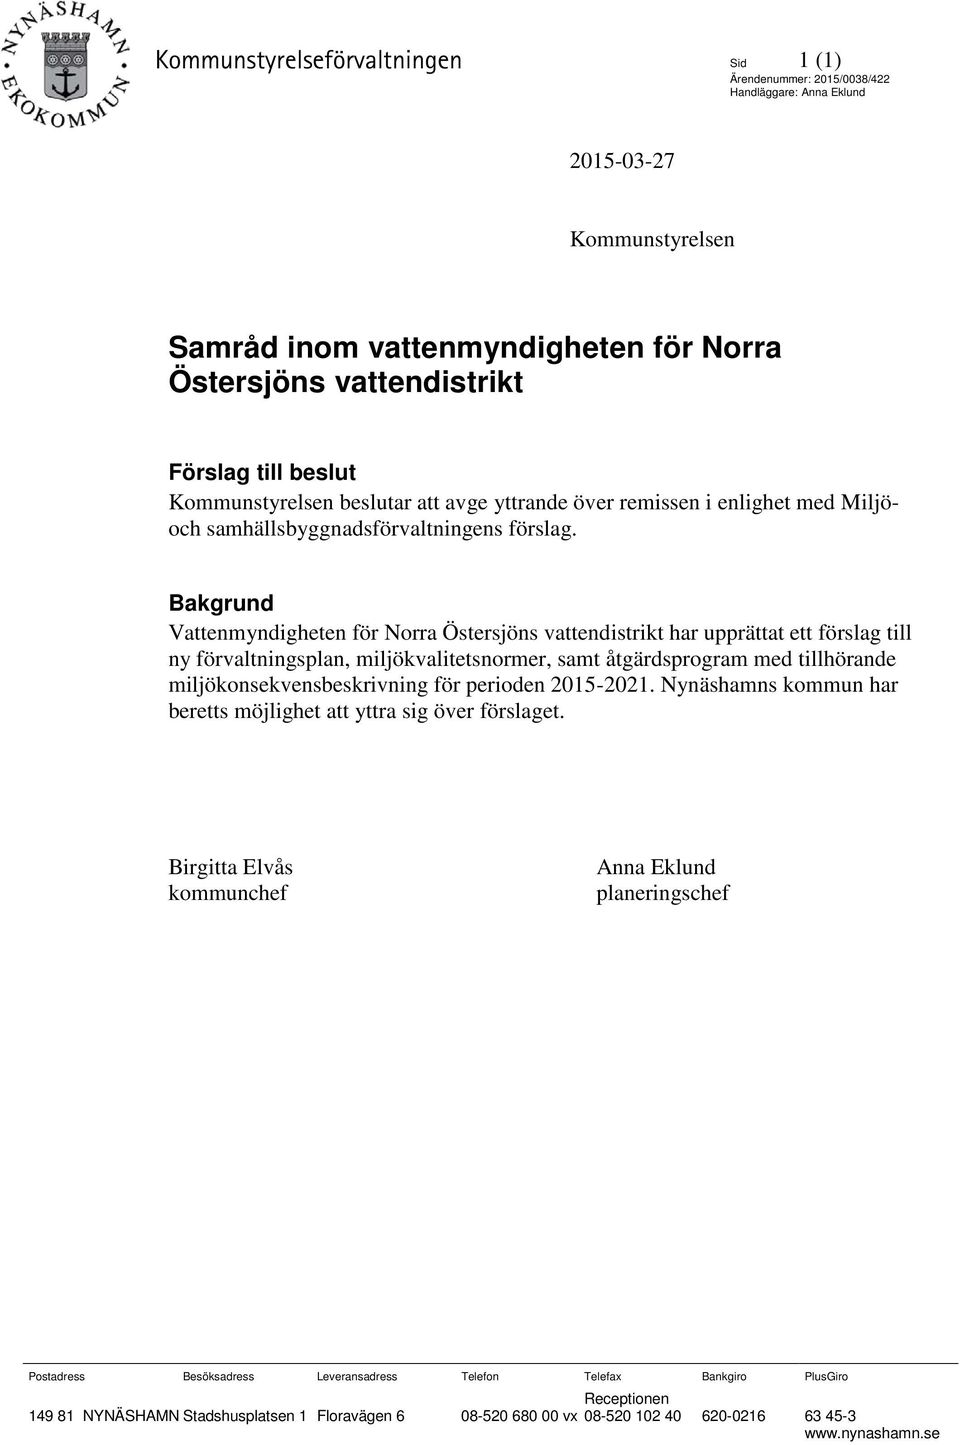 Bakgrund Vattenmyndigheten för Norra Östersjöns vattendistrikt har upprättat ett förslag till ny förvaltningsplan, miljökvalitetsnormer, samt åtgärdsprogram med tillhörande miljökonsekvensbeskrivning